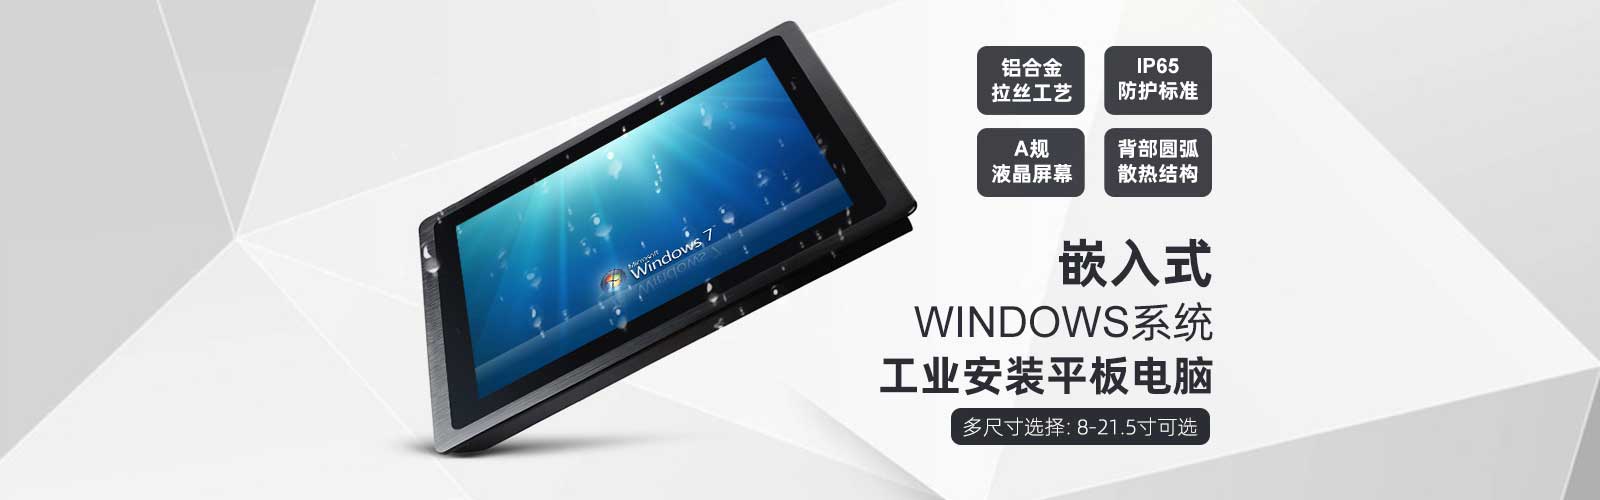 嵌入式windows系統工業安裝平板電腦，多尺寸選擇：8-21.5寸可選，鋁合金拉絲工藝、IP65防護標準、A規液晶屏幕、背部圓弧散熱結構